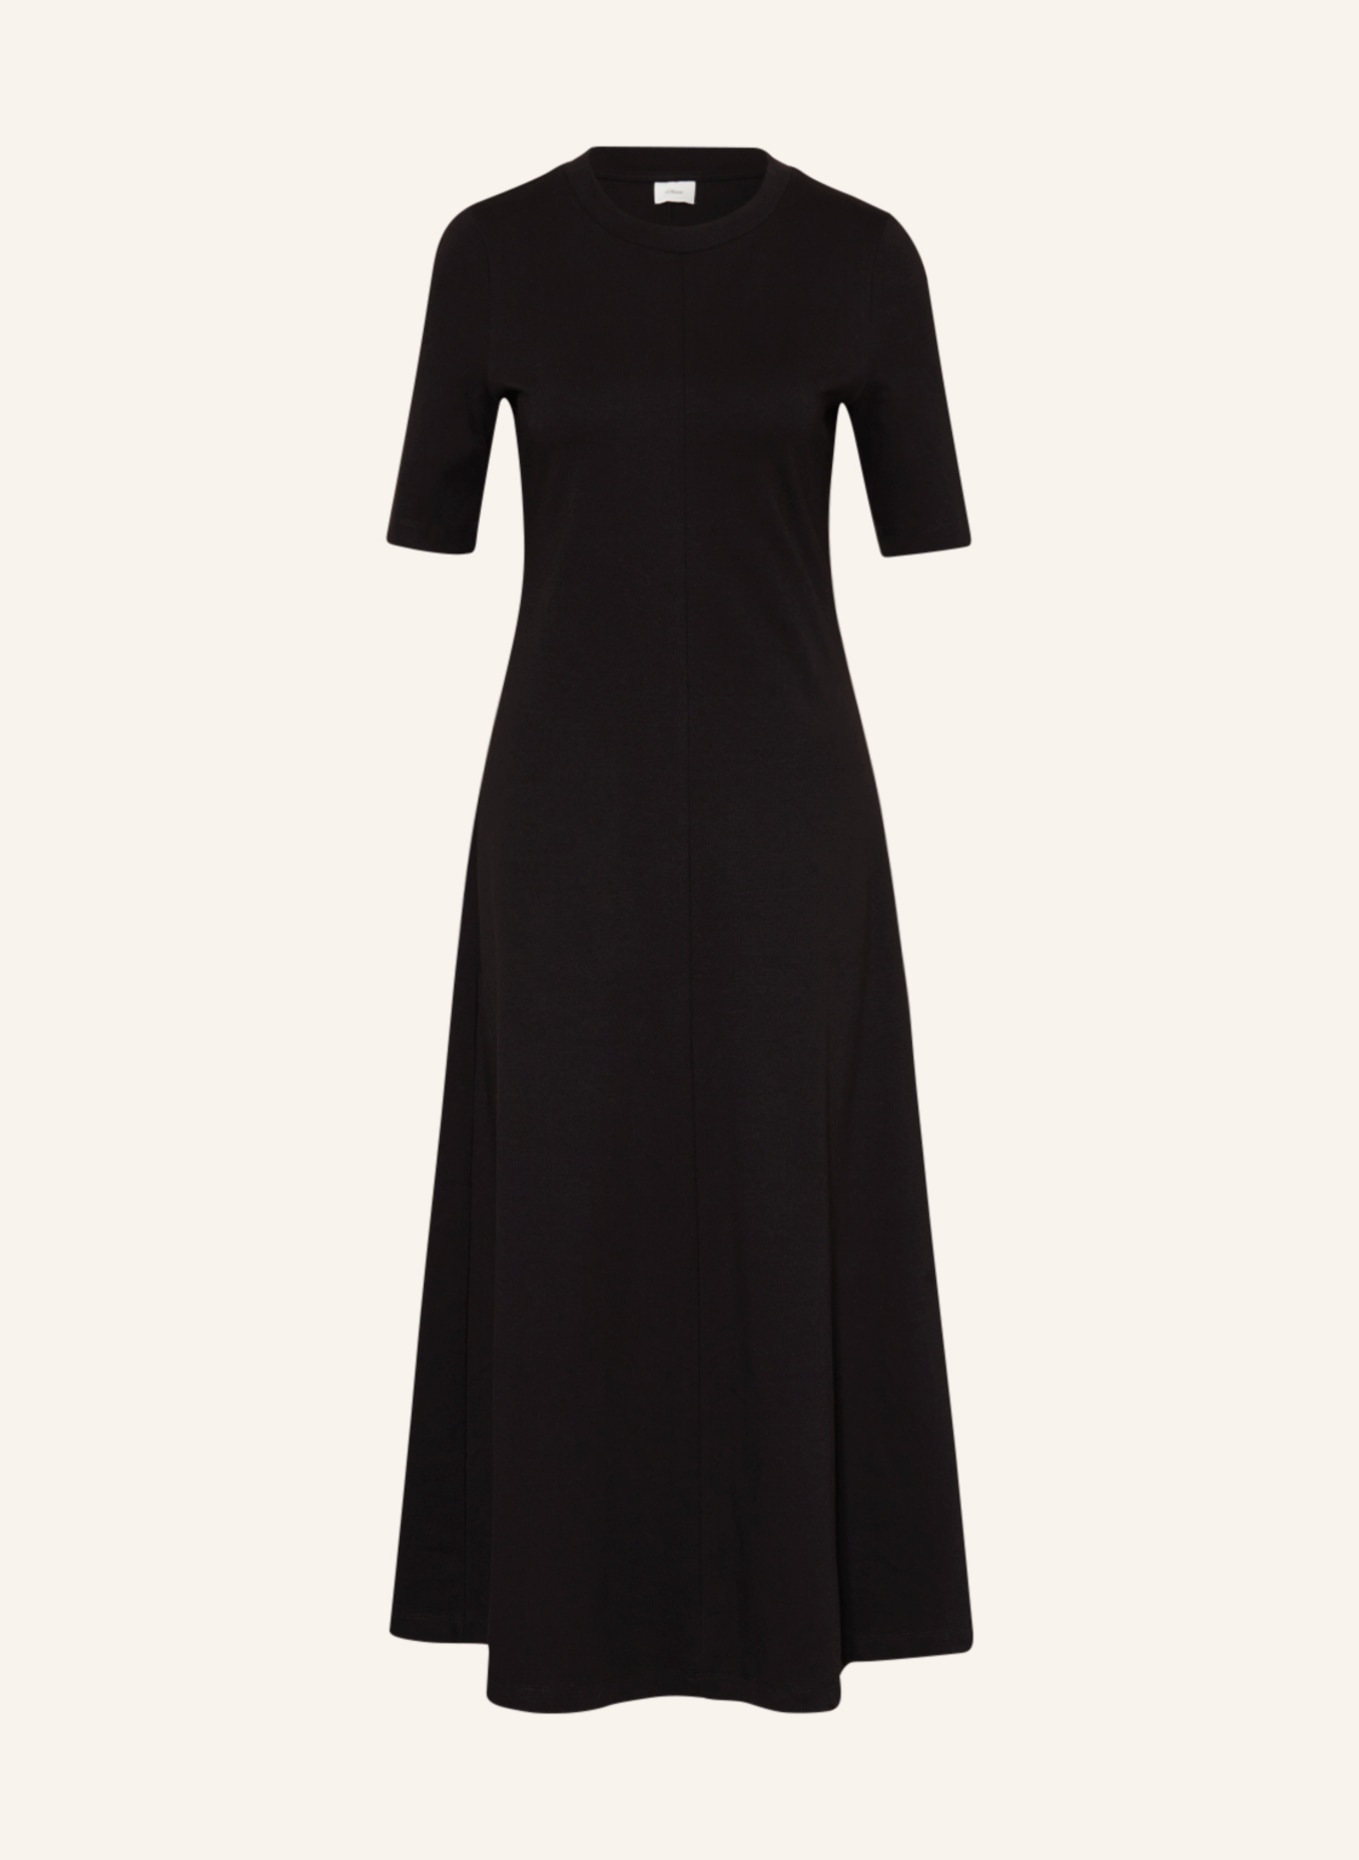 s.Oliver BLACK LABEL Jersey dress, Color: BLACK (Image 1)